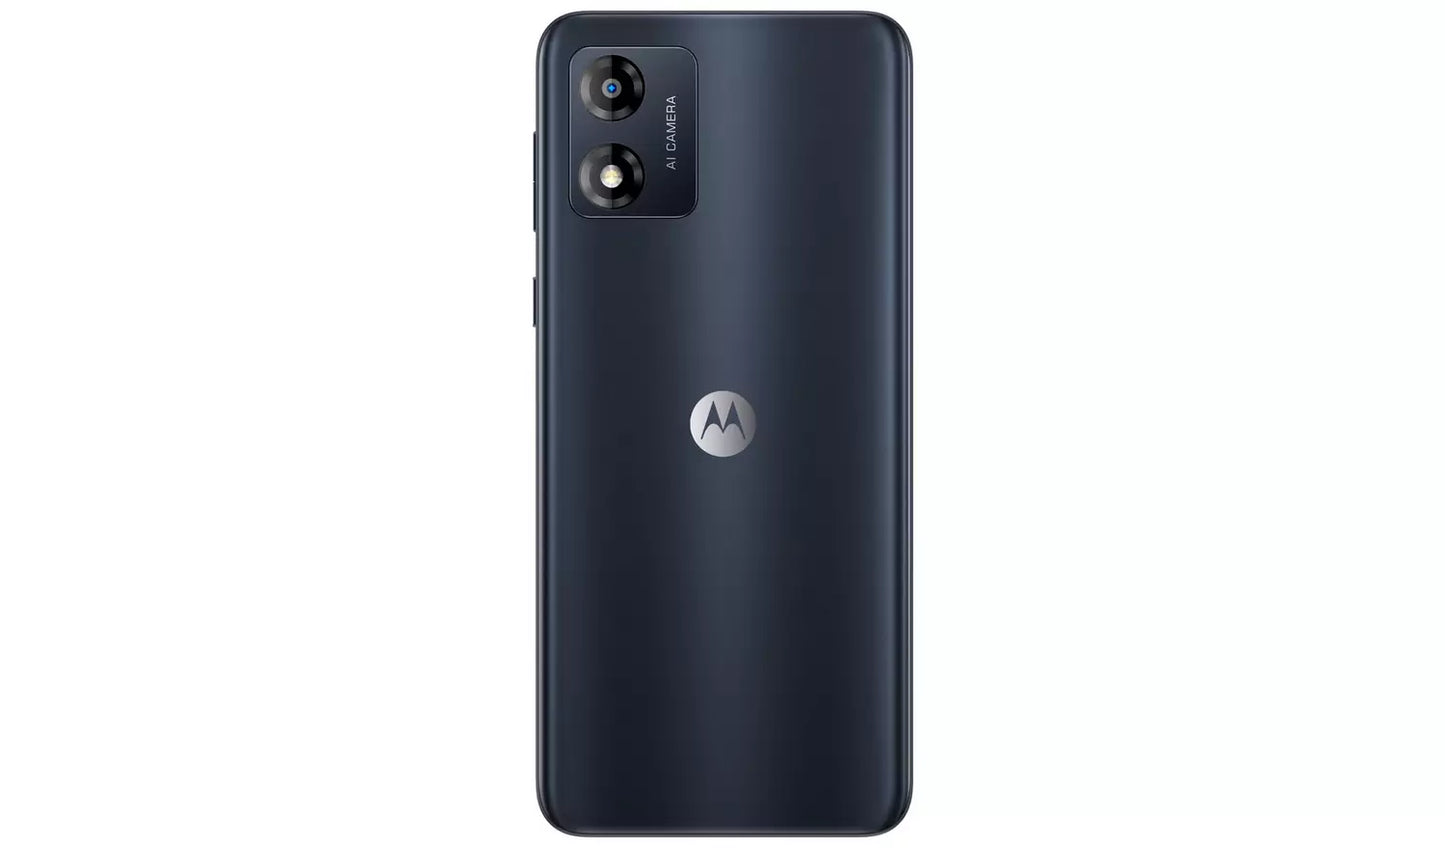 SIM Free Motorola E13 64GB Mobile Phone